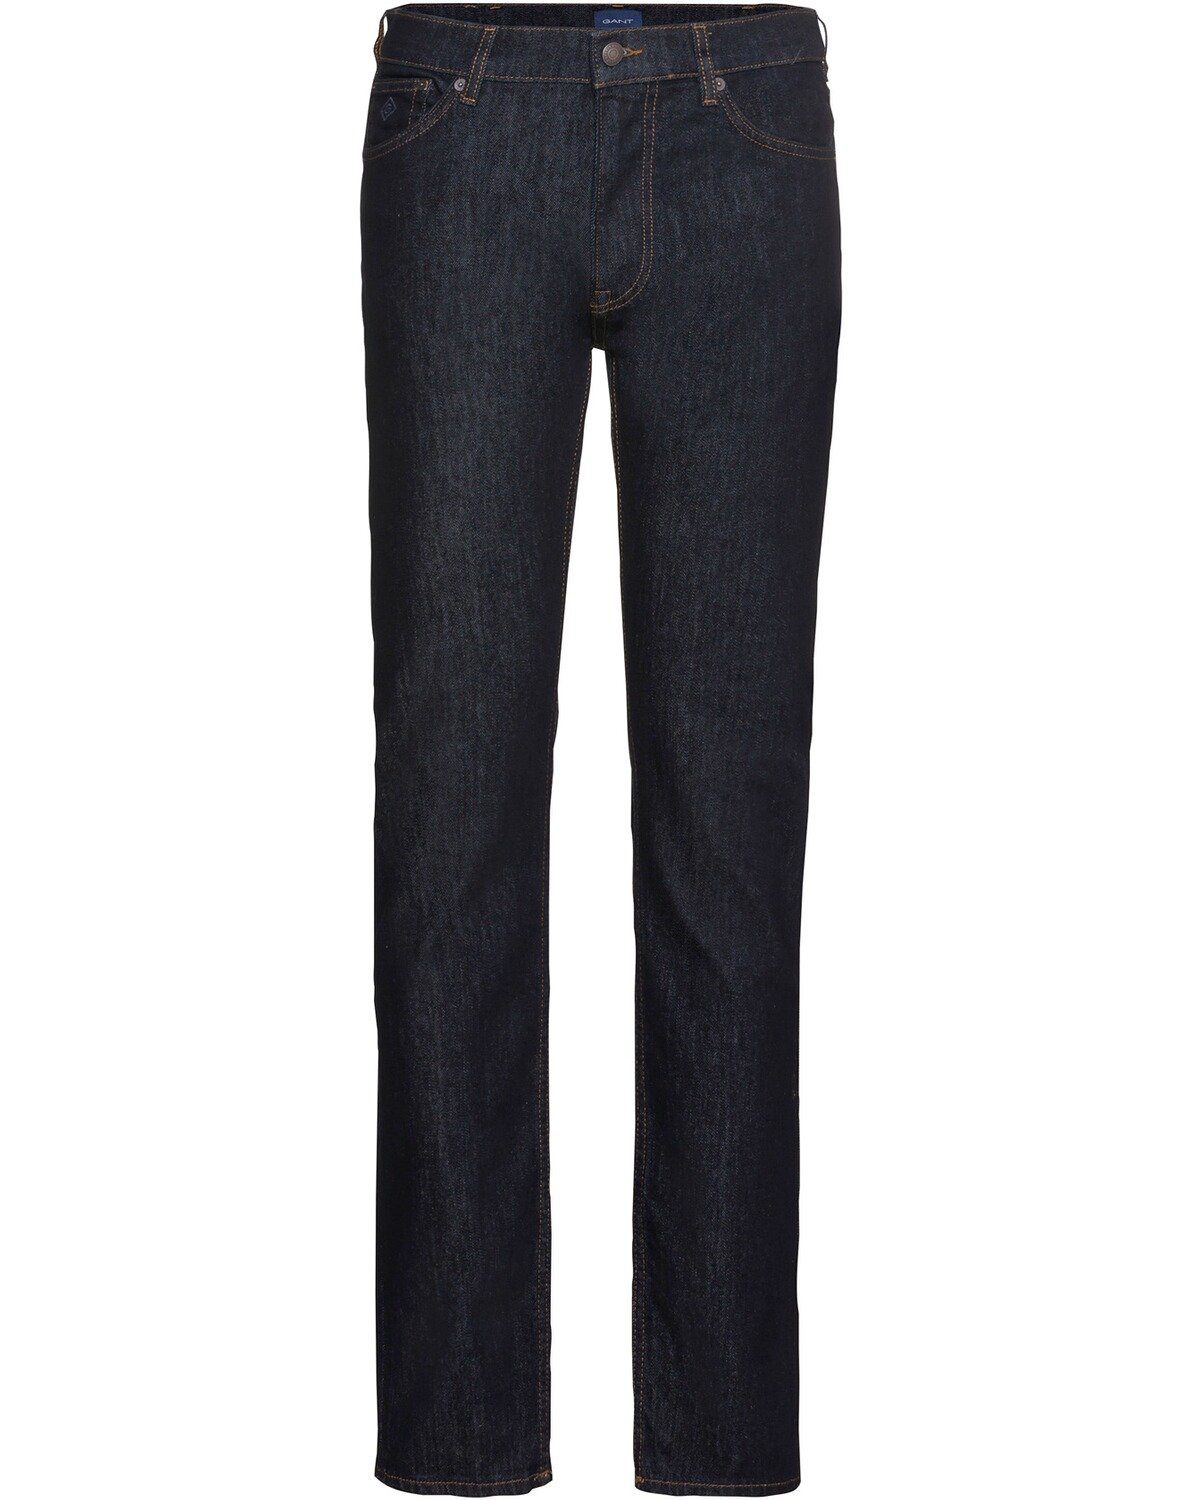 Gant 5-Pocket-Jeans Jeans Arley Darkblue